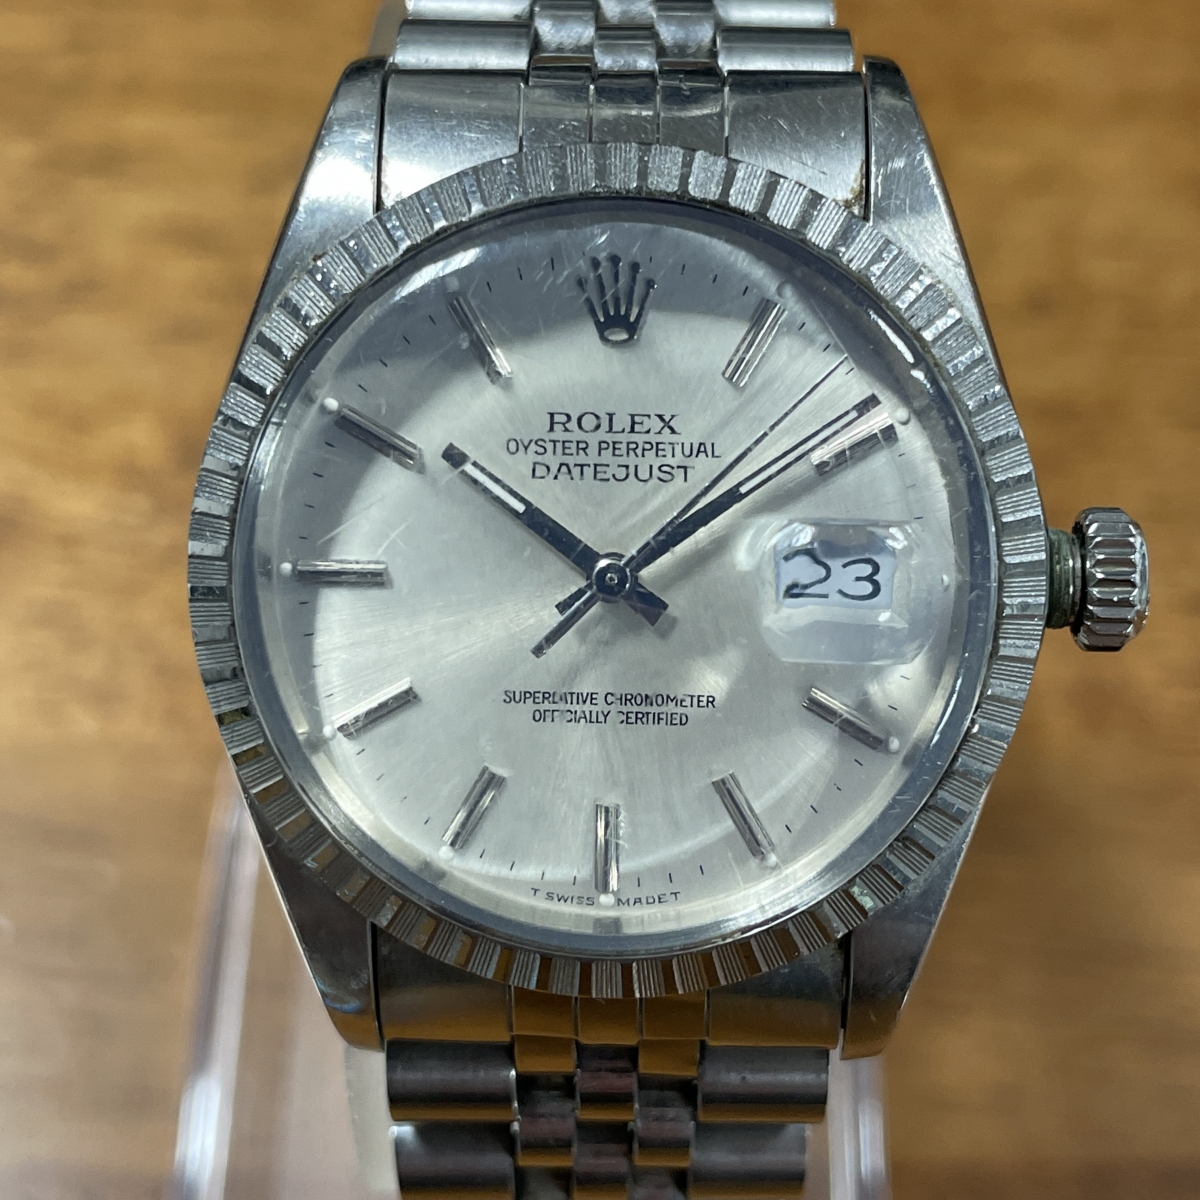 ロレックスの16030 デイトジャスト ジュビリーブレス バーインデックス 自動巻き時計の買取実績です。